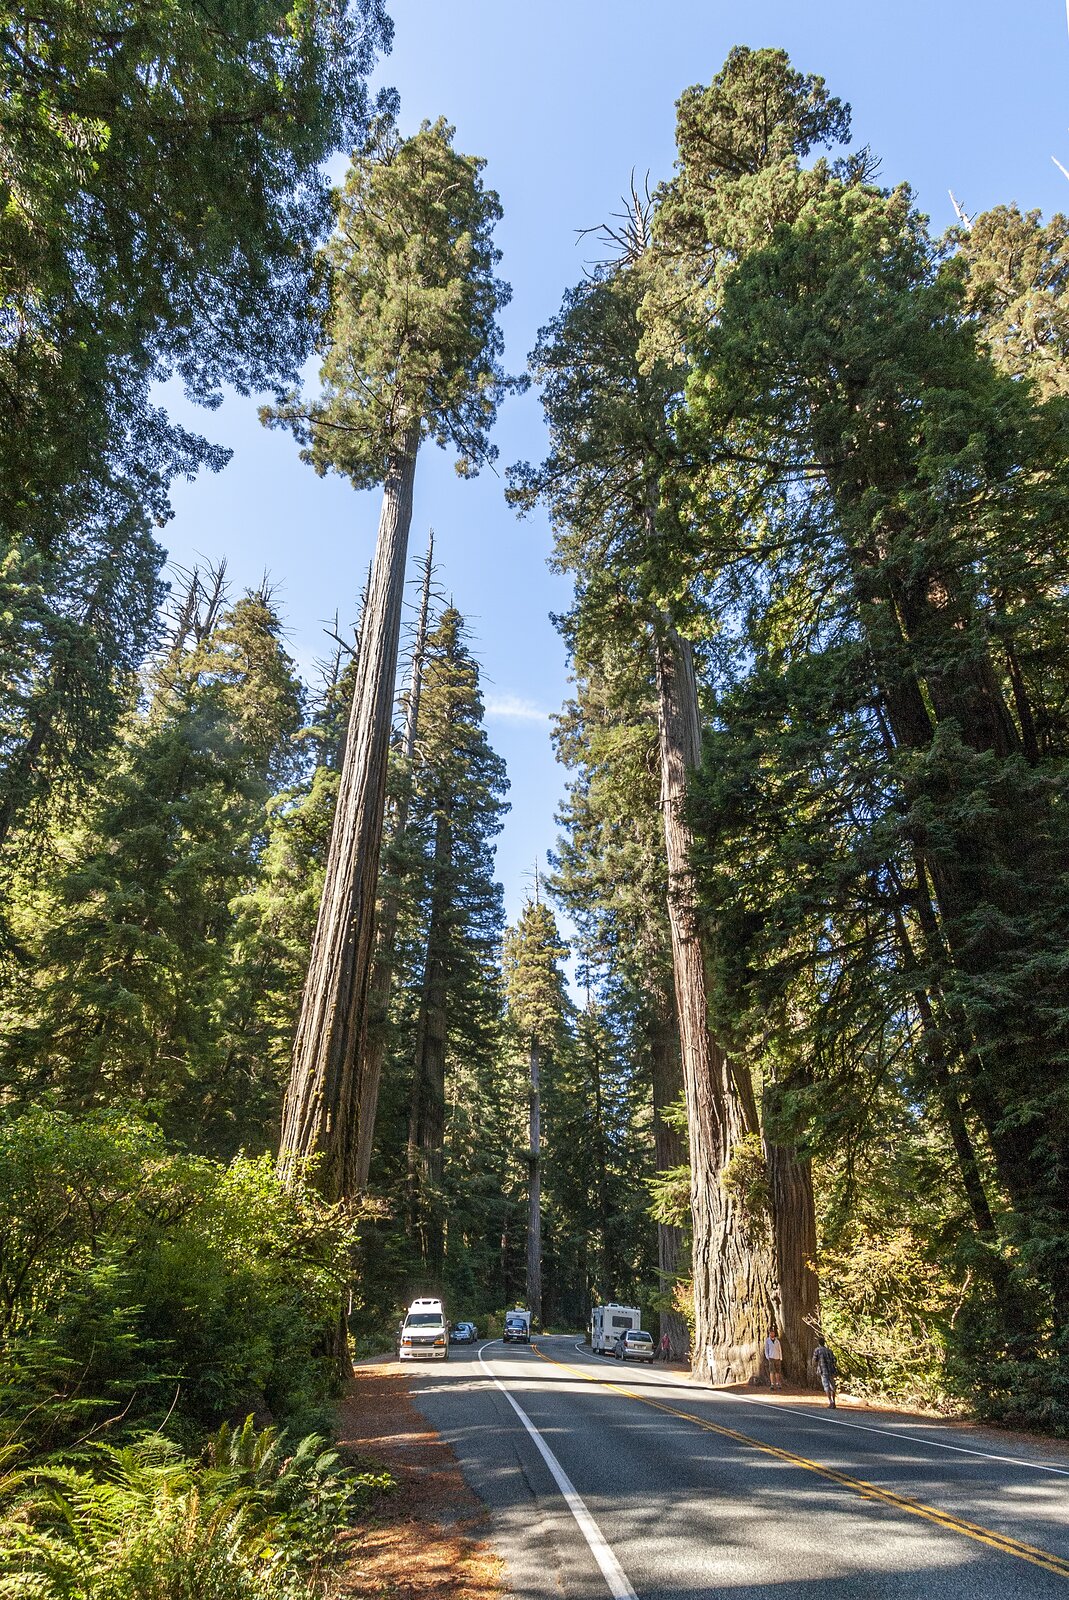 Zdjęcie przedstawia drogę po którym przemieszczają się samochody. Leży ona pomiędzy niezwykle wysokimi drzewami. Ich pnie są przez większość ich długości nierozgałęzione. Tylko przy czubku można zauważyć pokryte zielonymi igłami gałęzie. 